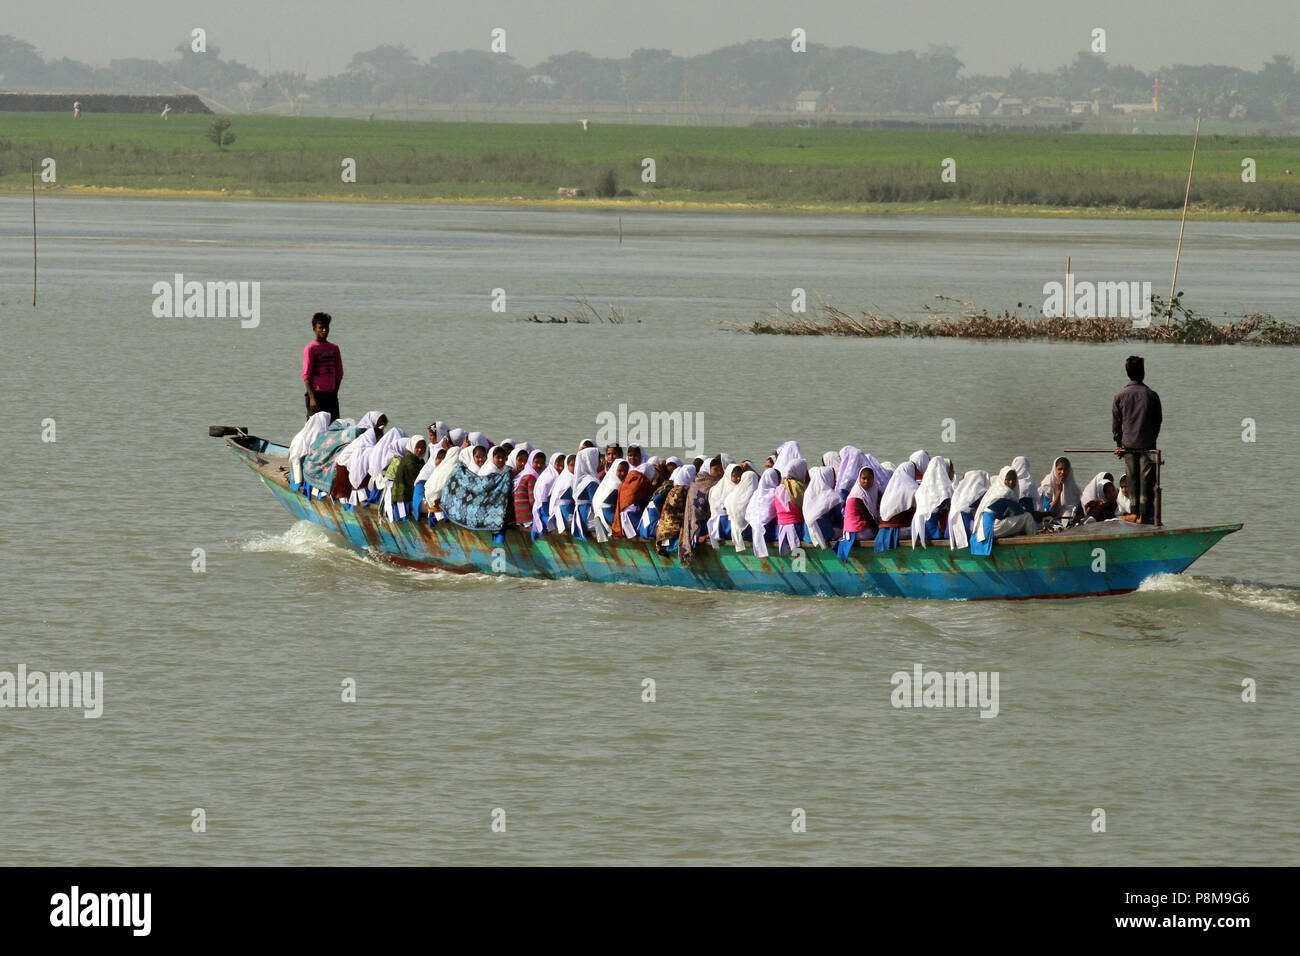 Shariyatpur, Bangladesh - 12 janvier 2015 : un bateau plein de personnes, essentiellement des étudiants, est réglé pour traverser la rivière Padma de zone Shariyatpur. Mettre thei Banque D'Images